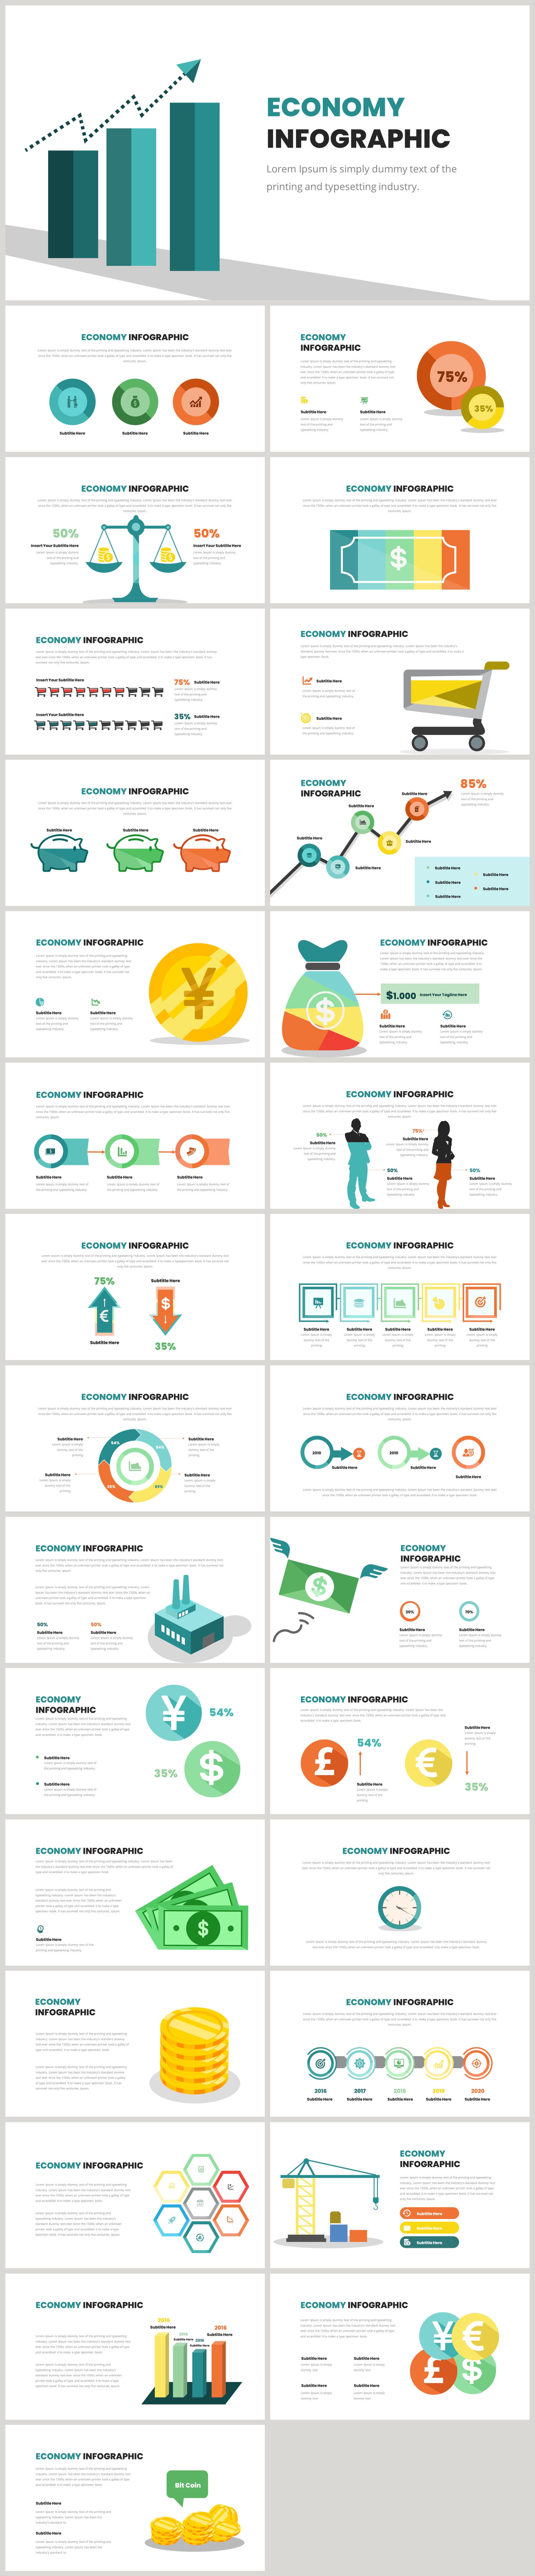 economy-infographic-powerpoint